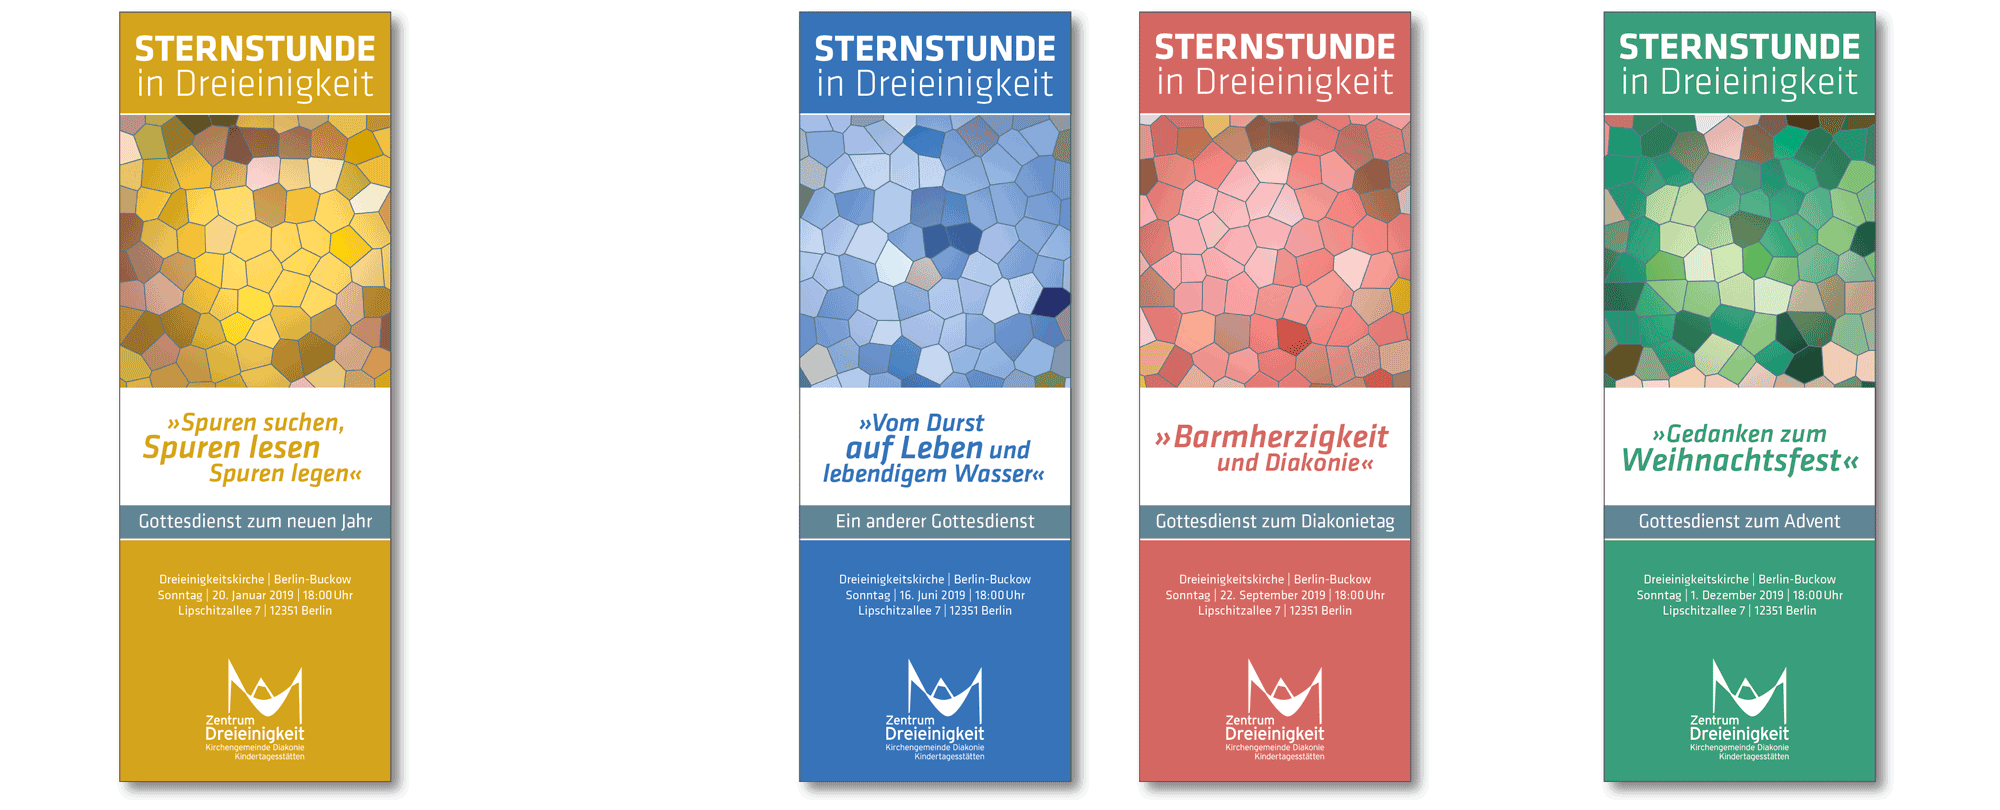 Einladungskarten zu besonderen Gottesdiensten »Sternstunde in Dreieinigkeit«.